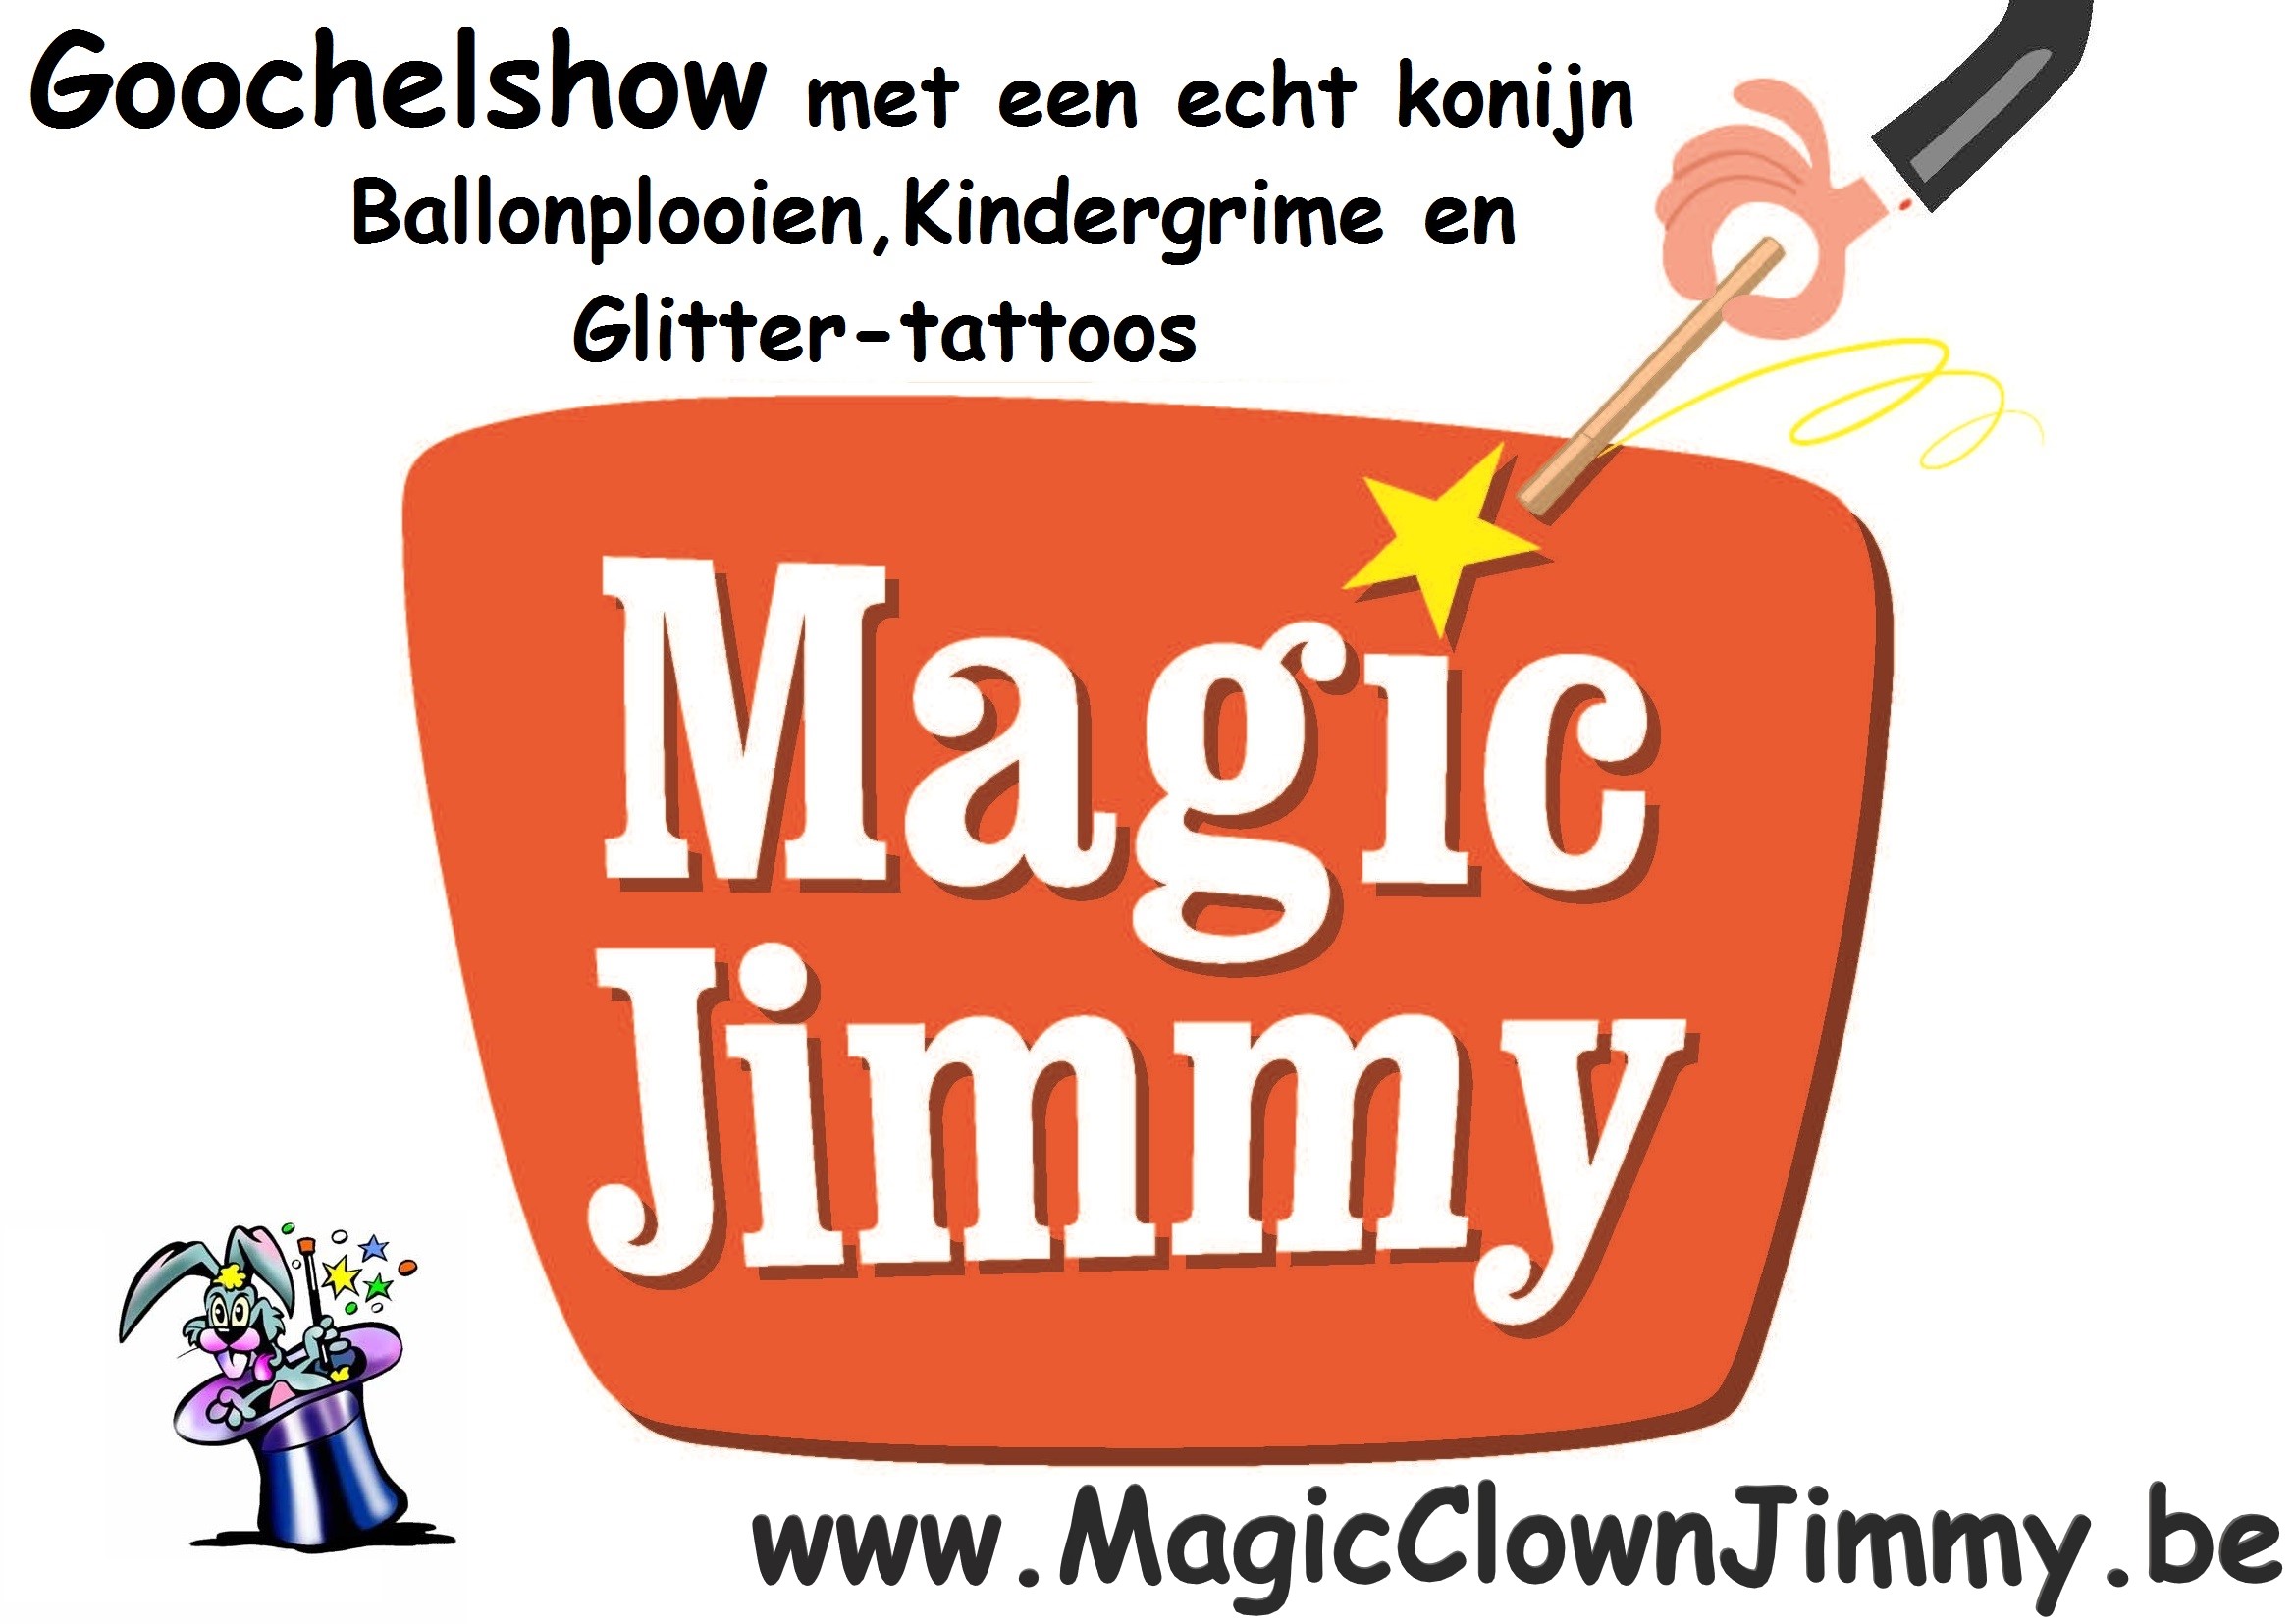 hierbij-ziet-u-het-logo-van-Magic-Clown-Jimmy-met-de-tekst-Goochelshow-met-een-echt-konijn-en-witte-duifjes-grappen-als-een-clown-ballonplooien-Grime-en-Glitter-tattoos